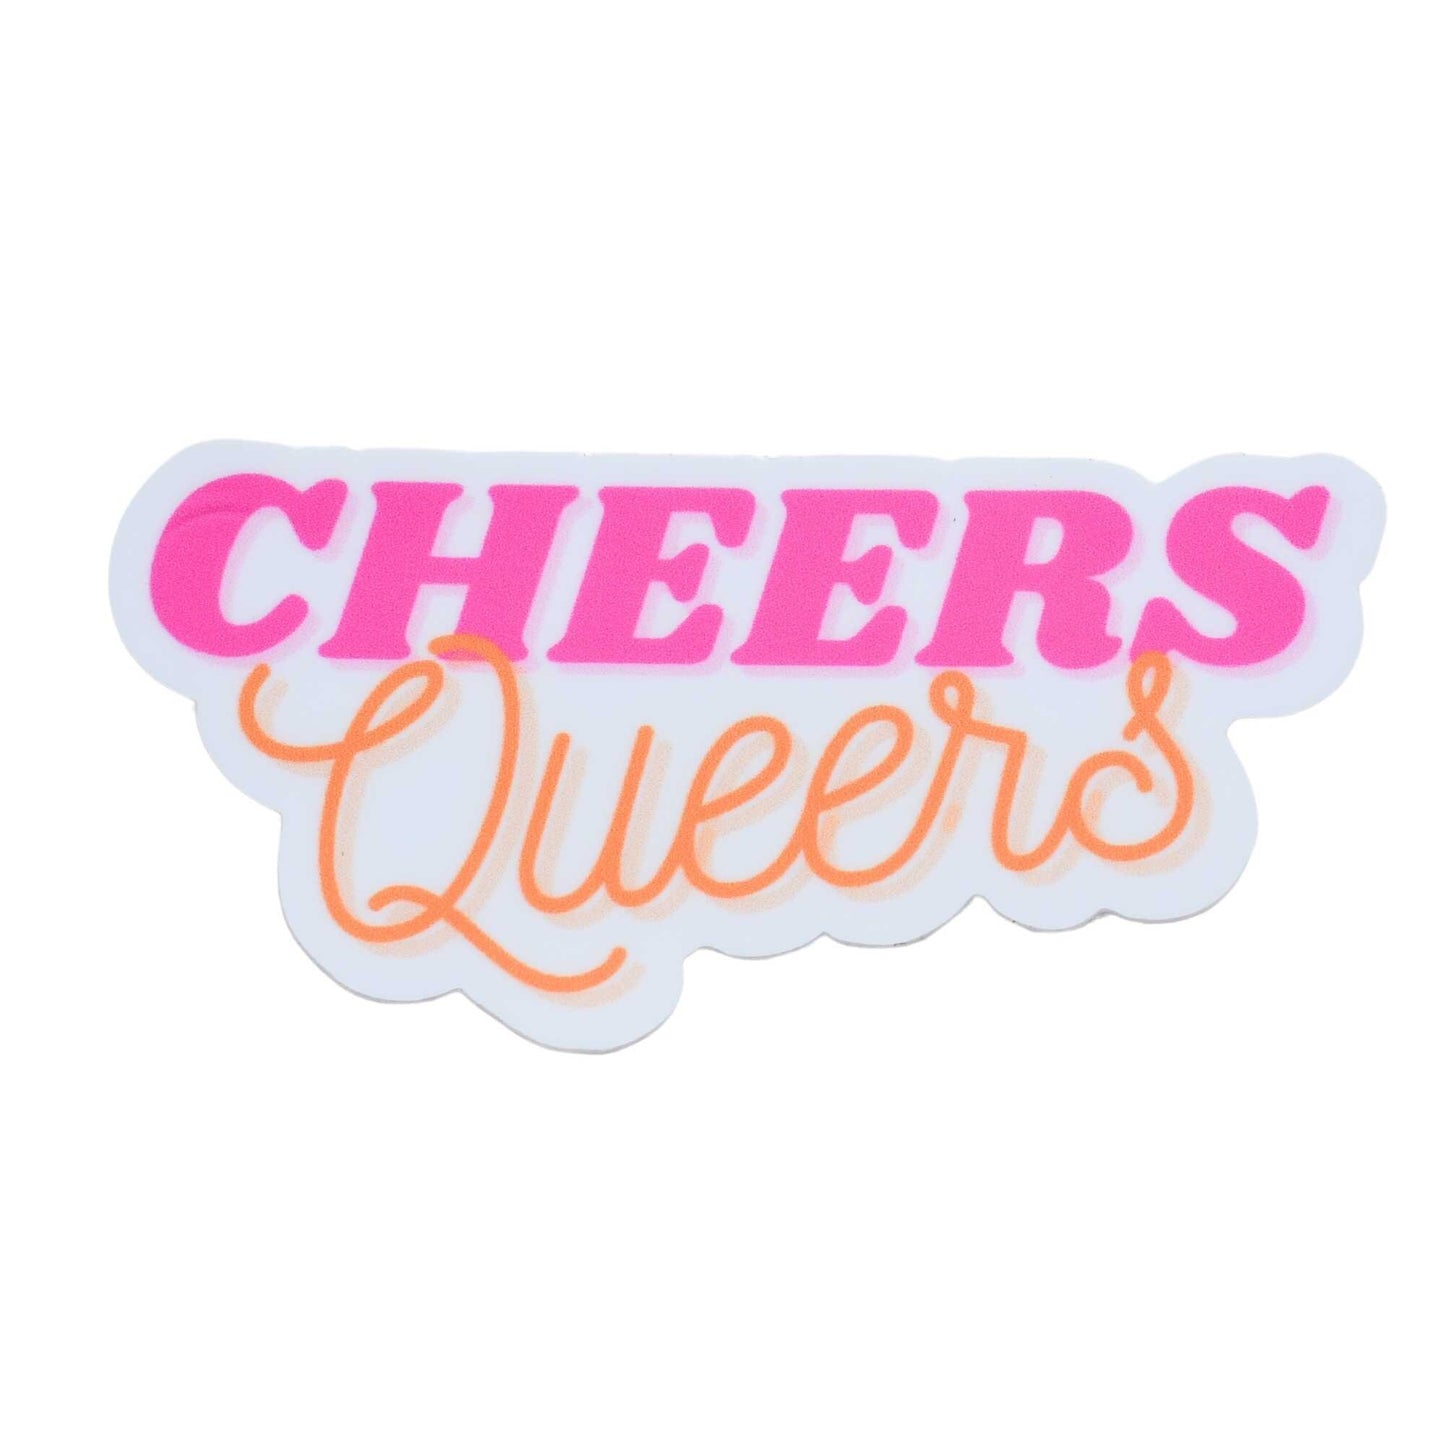 Cheers Queers Sticker, LGBTQ Sticker, Pride Merch, Vinyl Laptop Waterbottle Sticker, Funny Inspiration